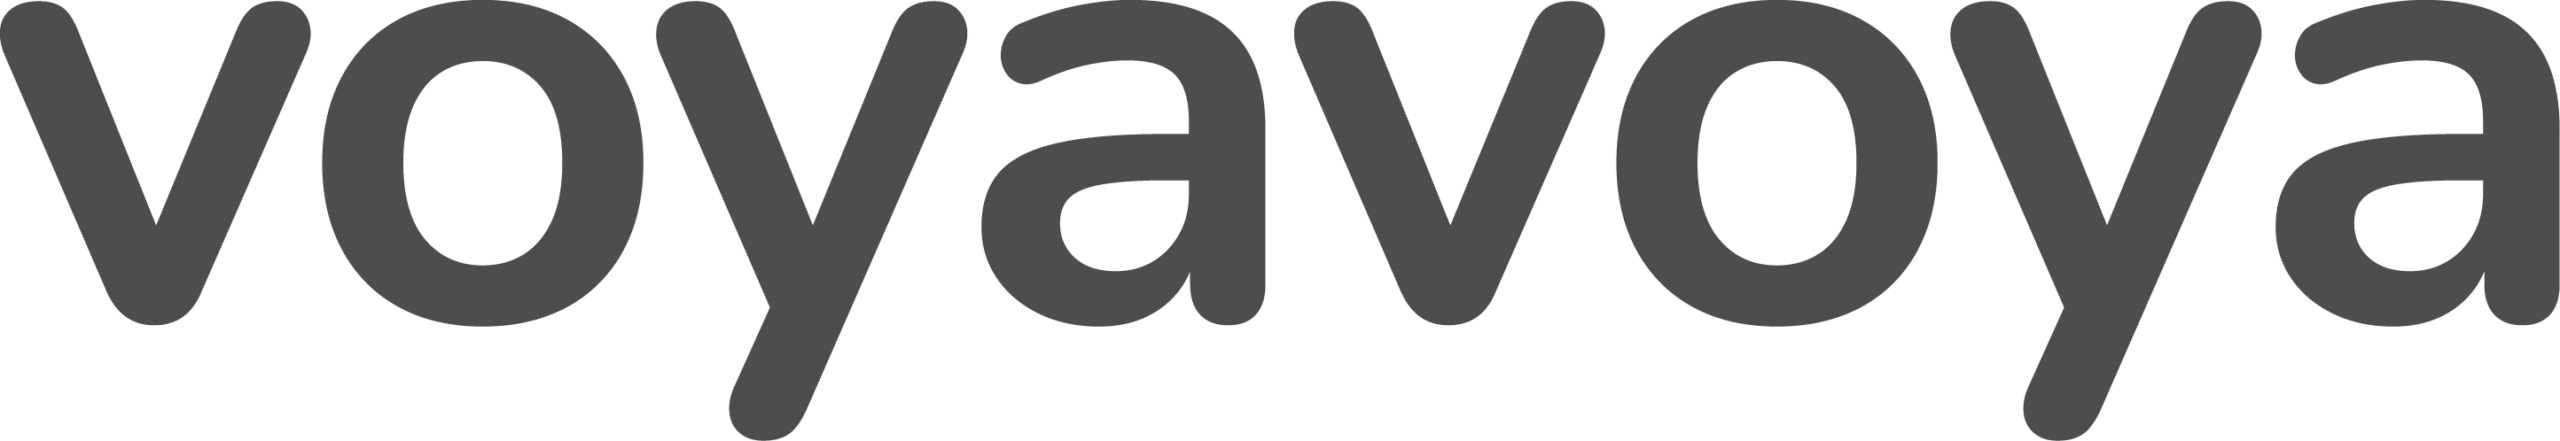 voyavoya-logo-grijs-transparant-tekstueel